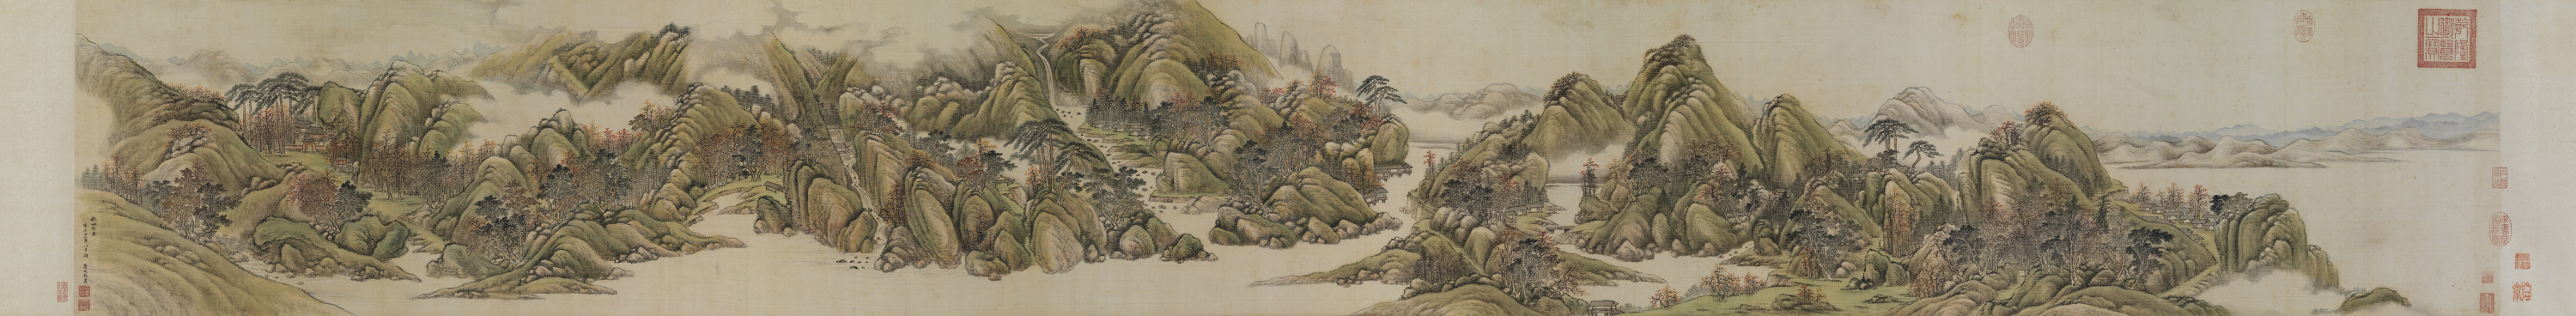 唐岱 (1673 – 1751後)<br> 秋山不老圖